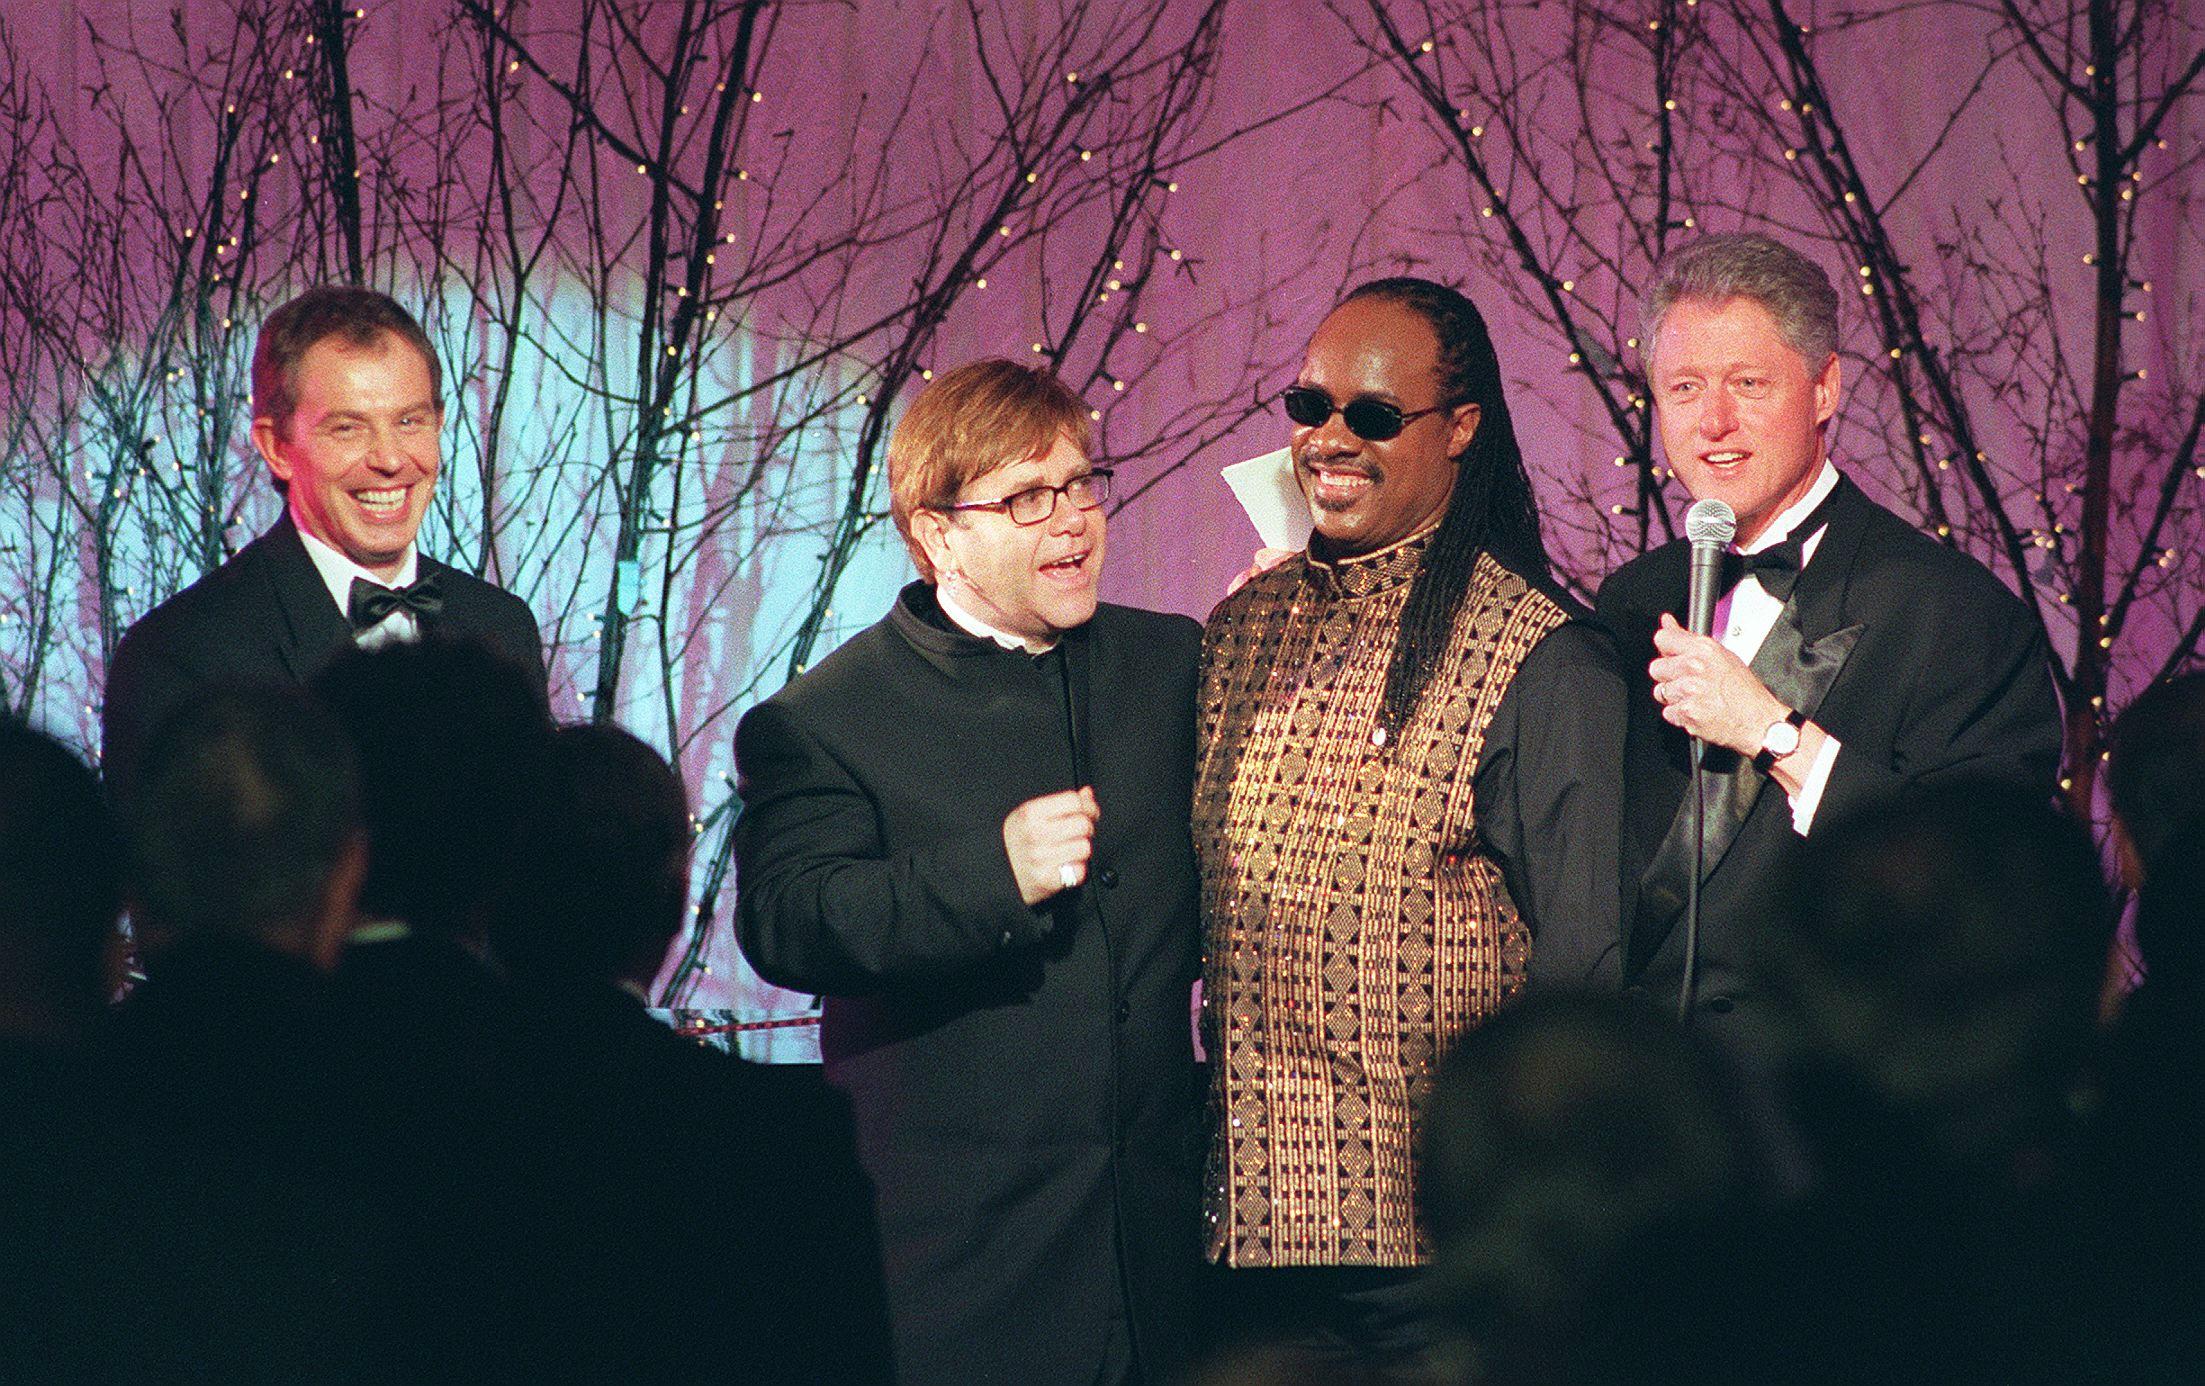 Febbraio 1997. In good company: Elton John partecipa alla cena di stato in onore del primo ministro inglese Tony Blair alla Casa Bianca. Da sinistra a destra: Tony Blair, Elton John, Stevie Wonder e Bill Clinton